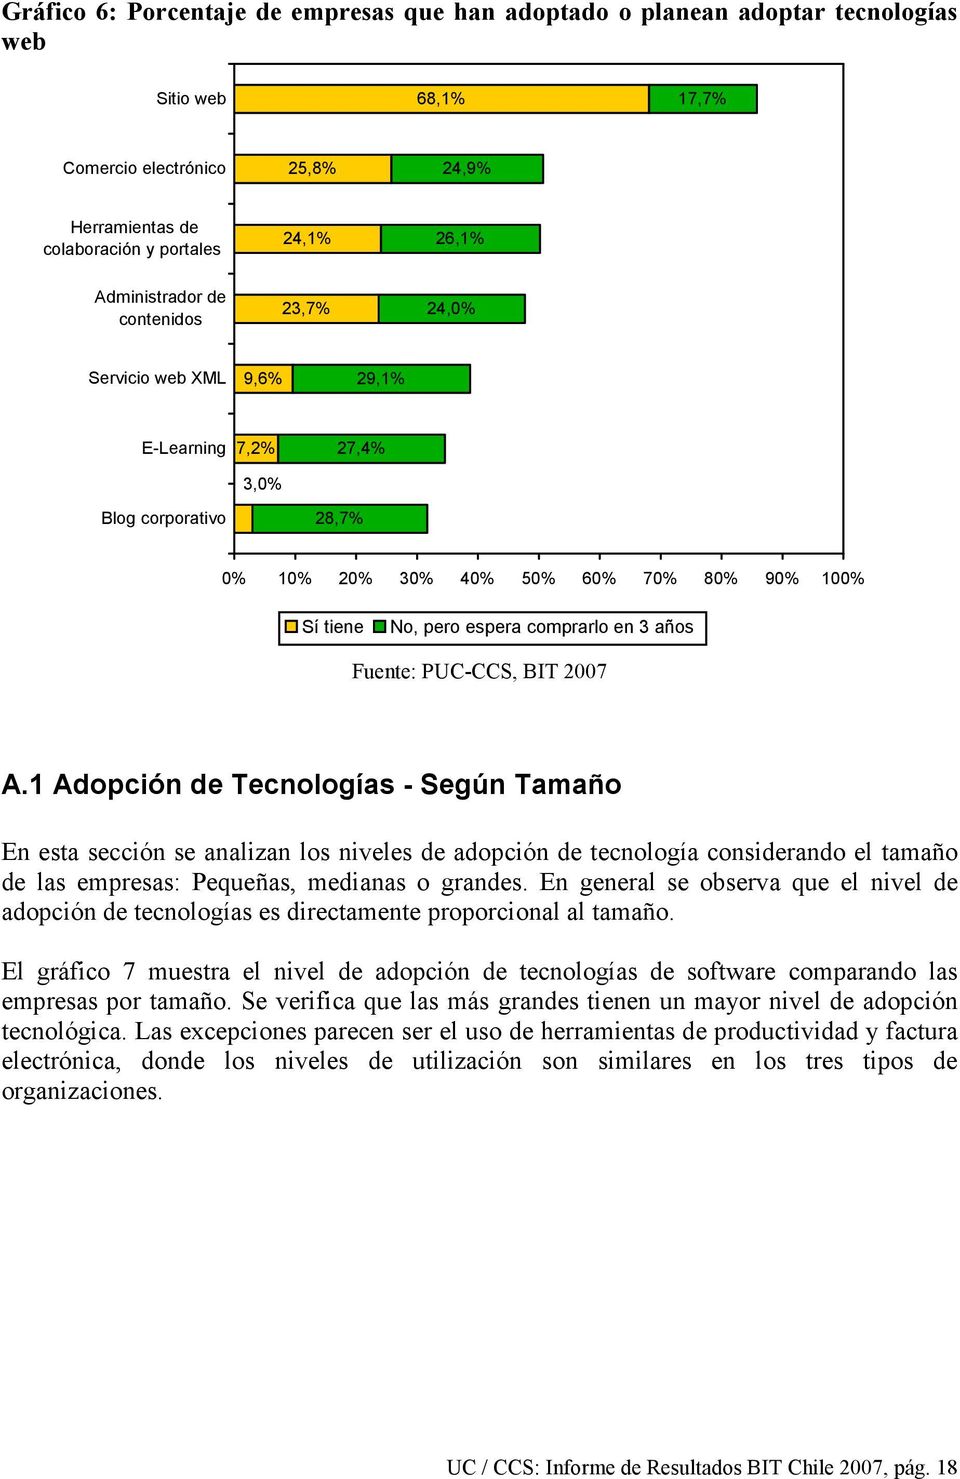 3 años A.1 Adopción de Tecnologías - Según Tamaño En esta sección se analizan los niveles de adopción de tecnología considerando el tamaño de las empresas: Pequeñas, medianas o grandes.